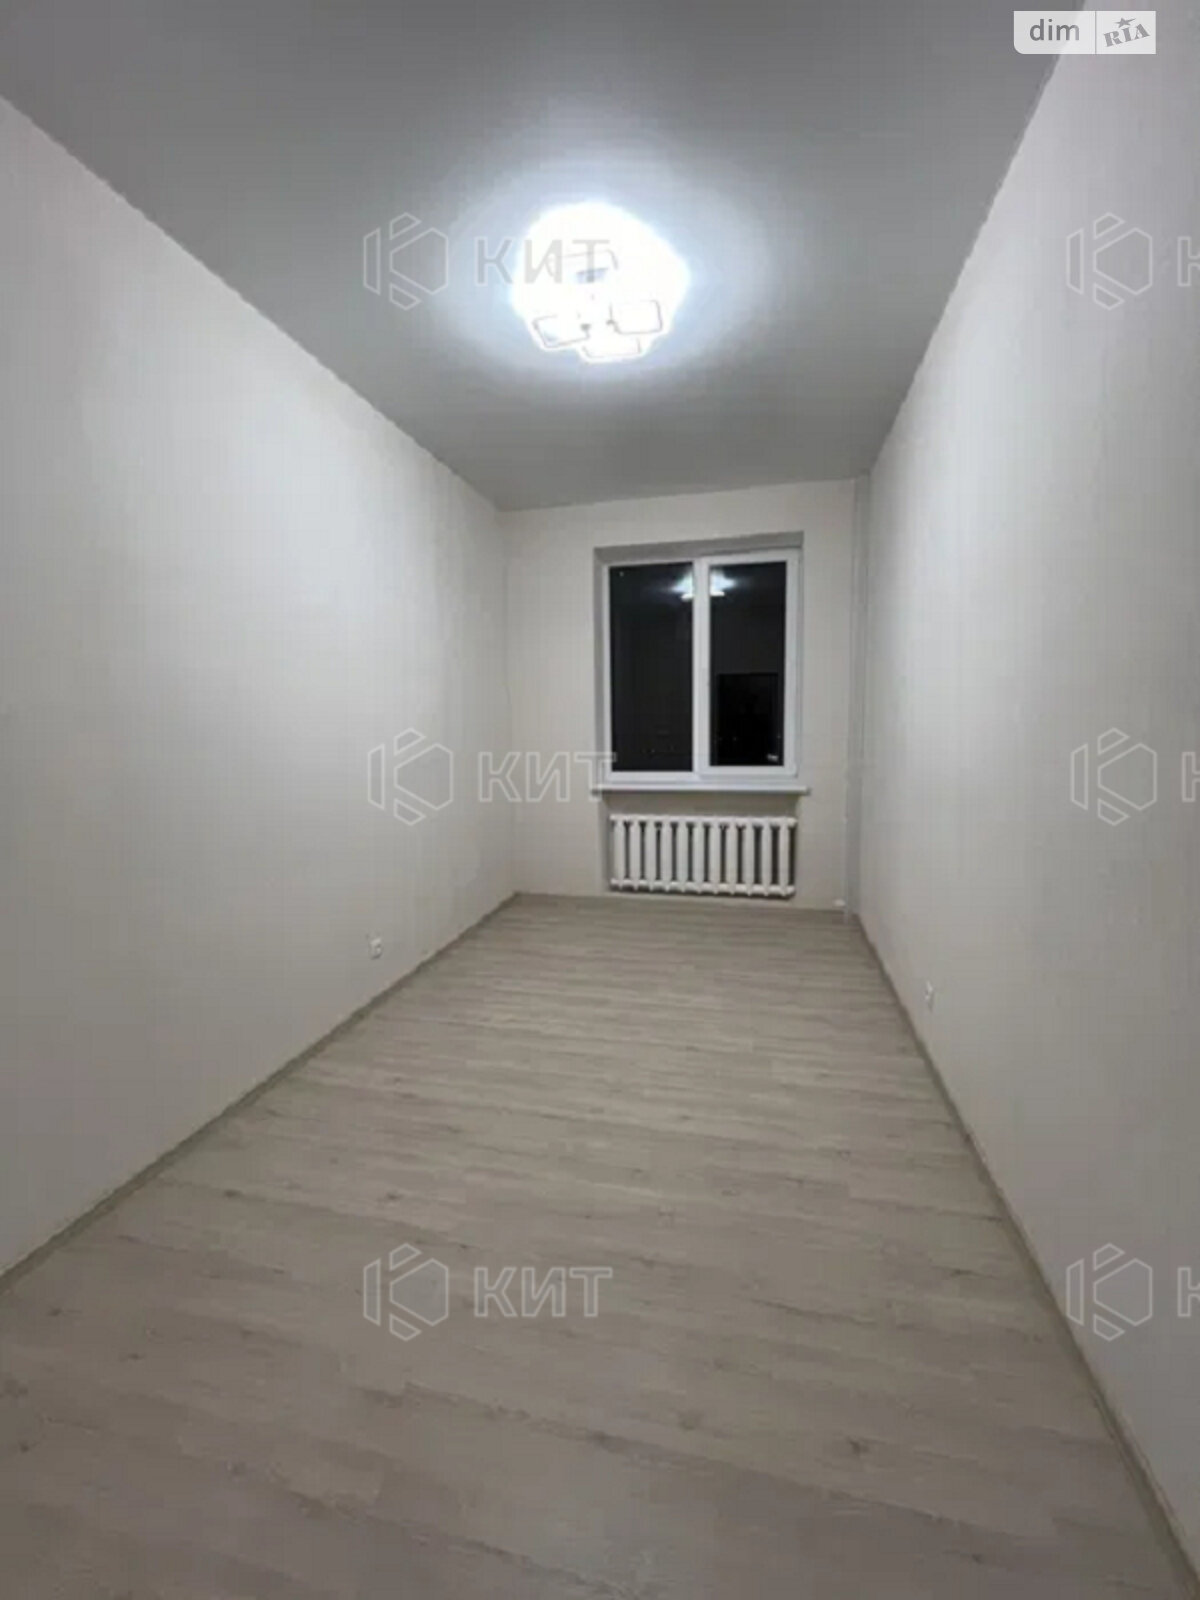 Продажа двухкомнатной квартиры в Харькове, на ул. Волонтерская 11, район Холодная Гора фото 1